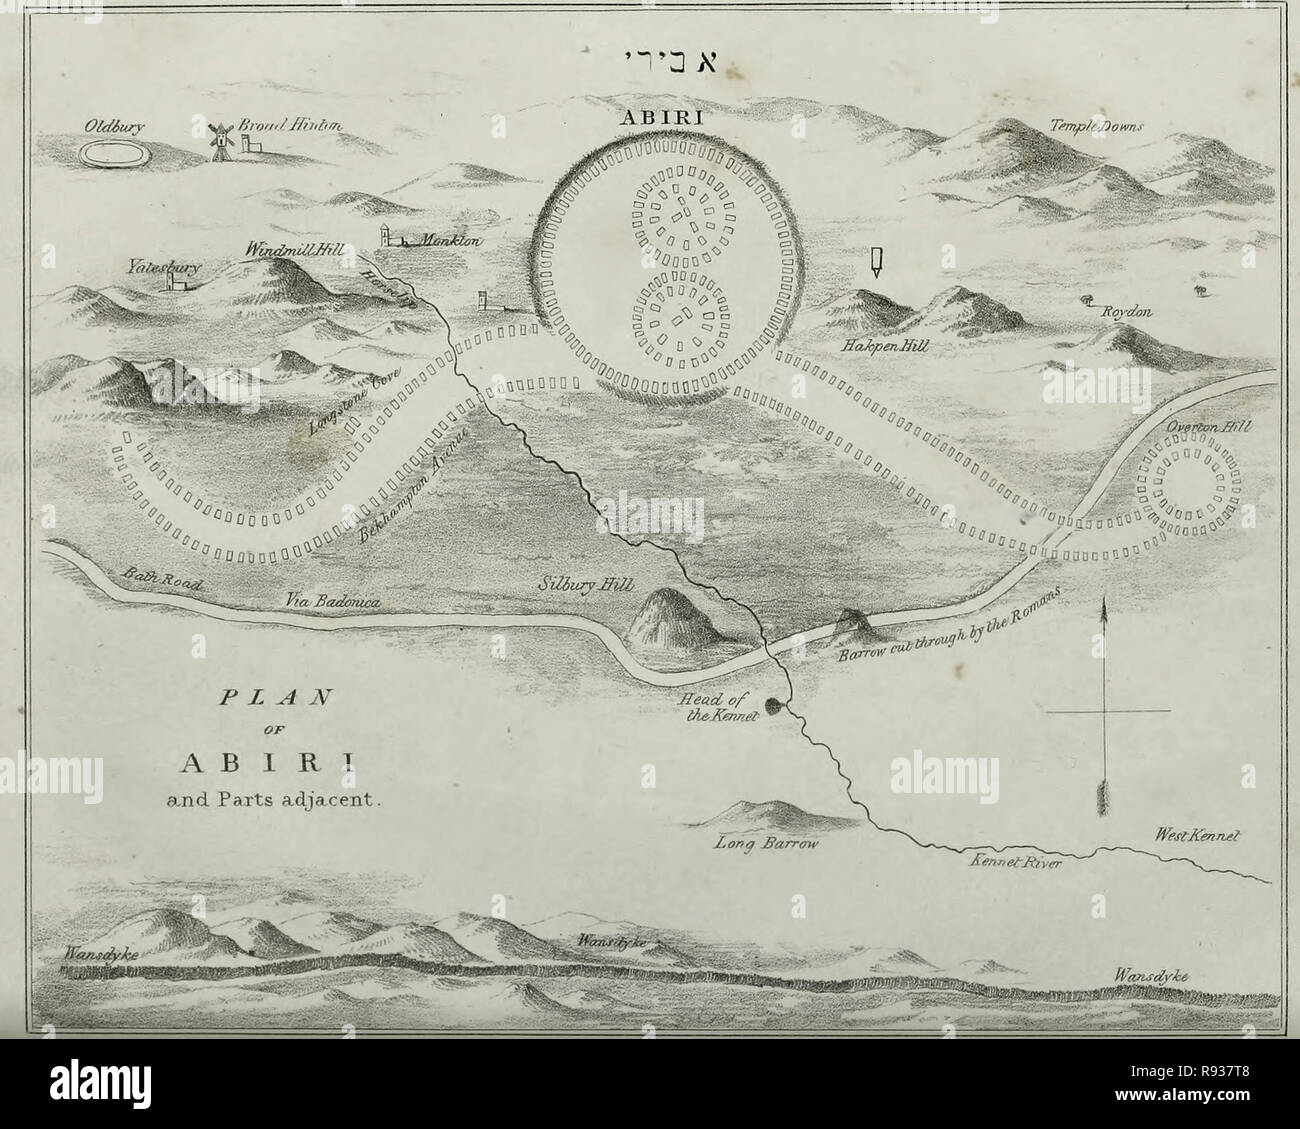 Plan der Abiri (avebury) und Teile angrenzenden, ca. 1825 Stockfoto